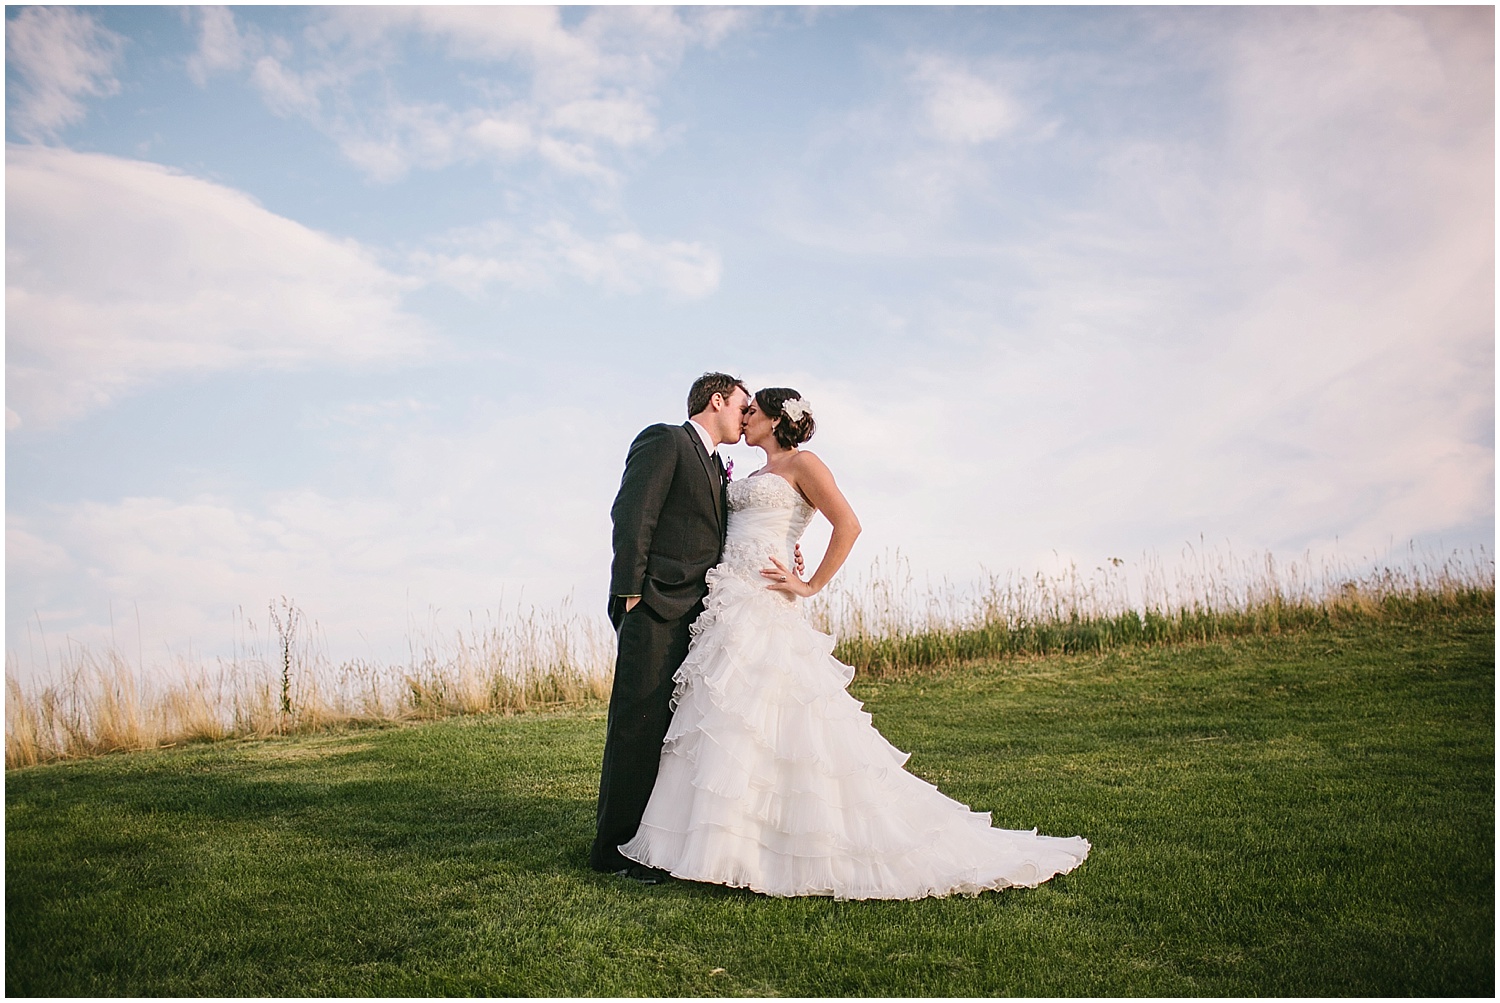 Sam + Ken – Omni Interlocken Wedding Photography